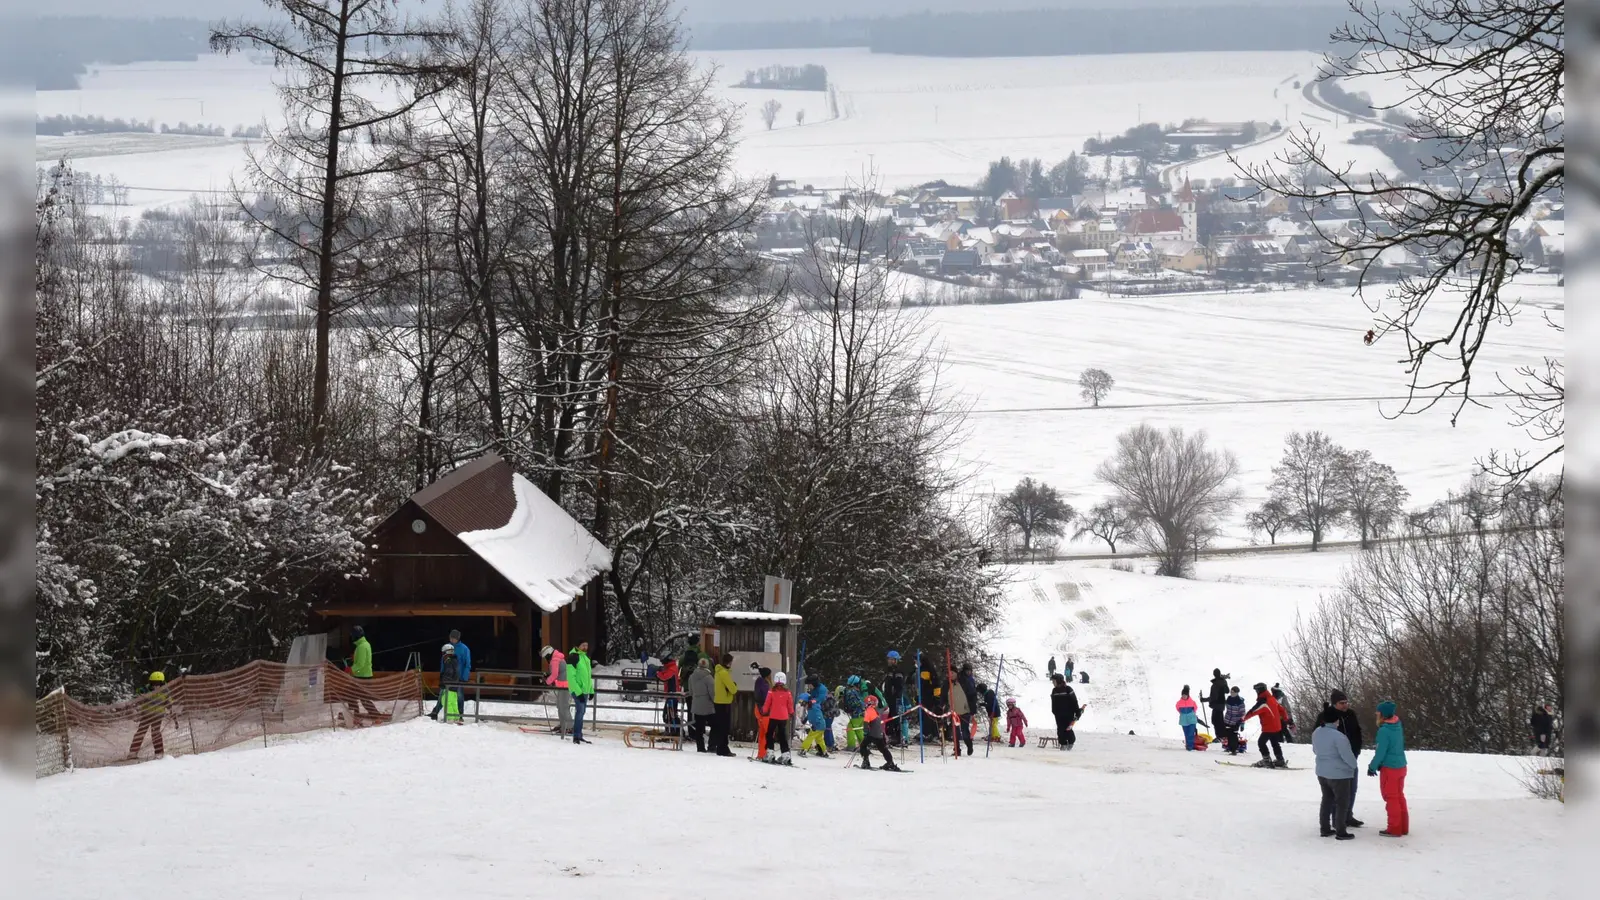 Der Skilift am Nordhang des Hesselbergs oberhalb von Ehingen ist derzeit außer Betrieb. Unbekannte haben das Stahlseil durchtrennt. Das Bild stammt aus dem Jahr 2019. (Foto: Peter Tippl)